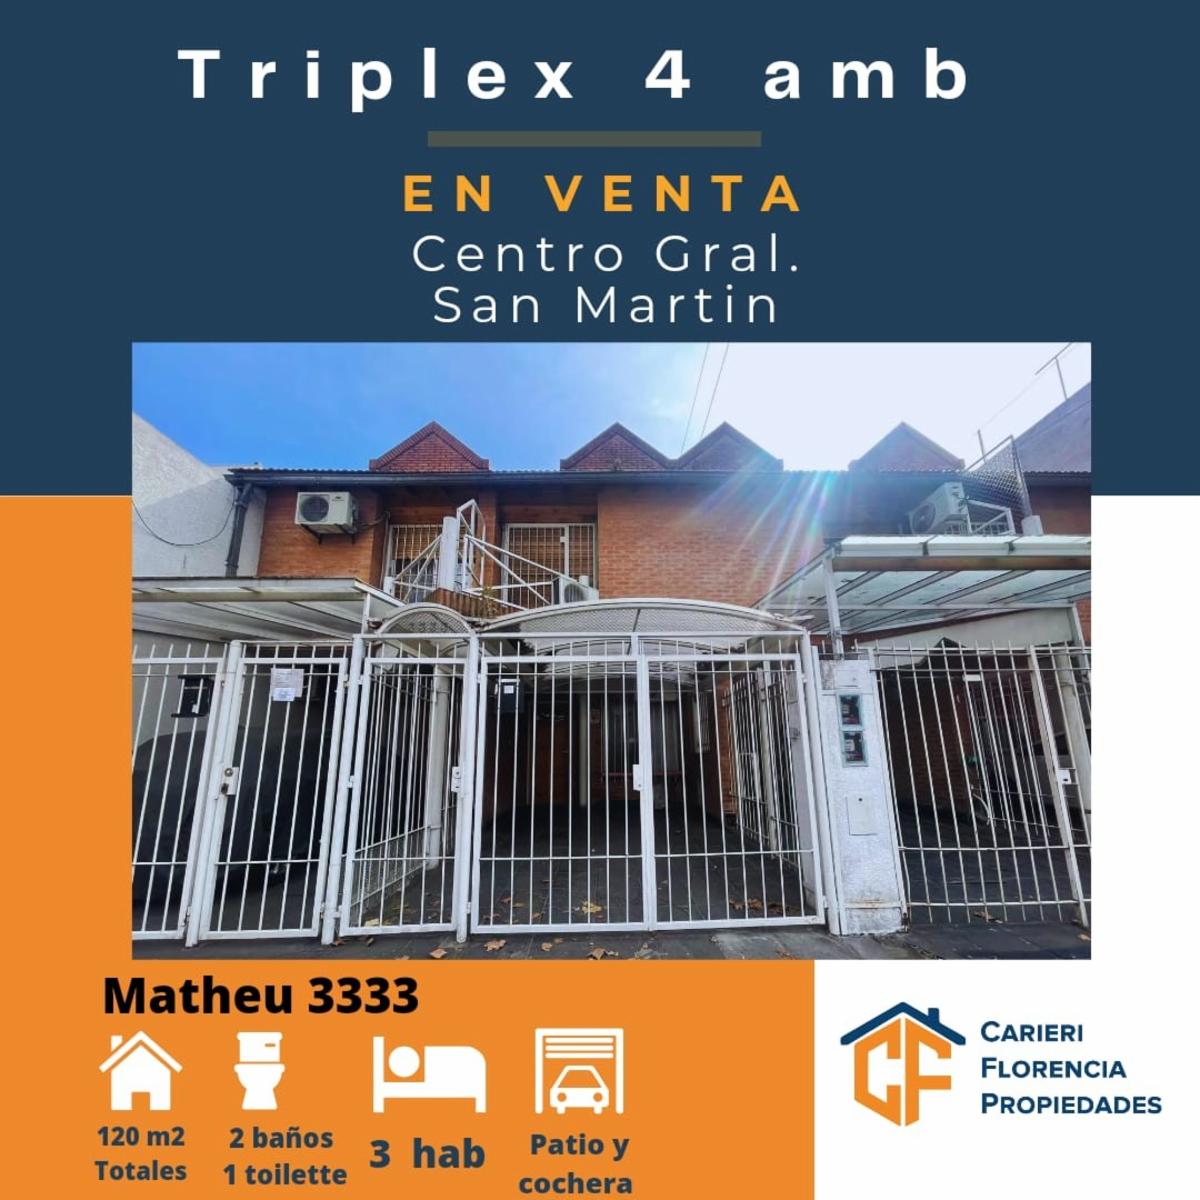 TRIPLEX 4 AMB EN CENTRO DE SAN MARTIN